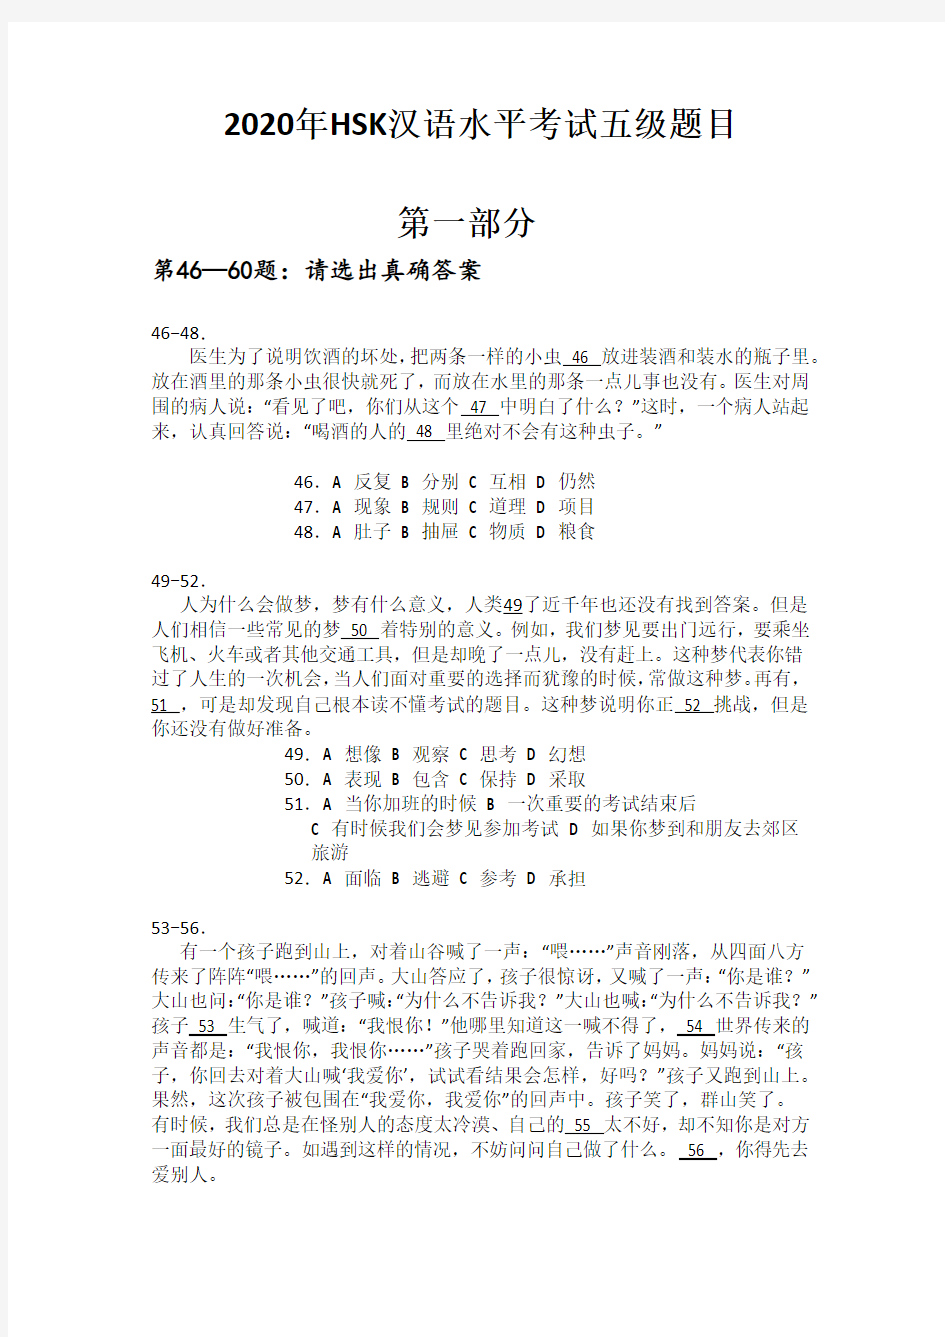 2020年HSK汉语水平考试五级题目